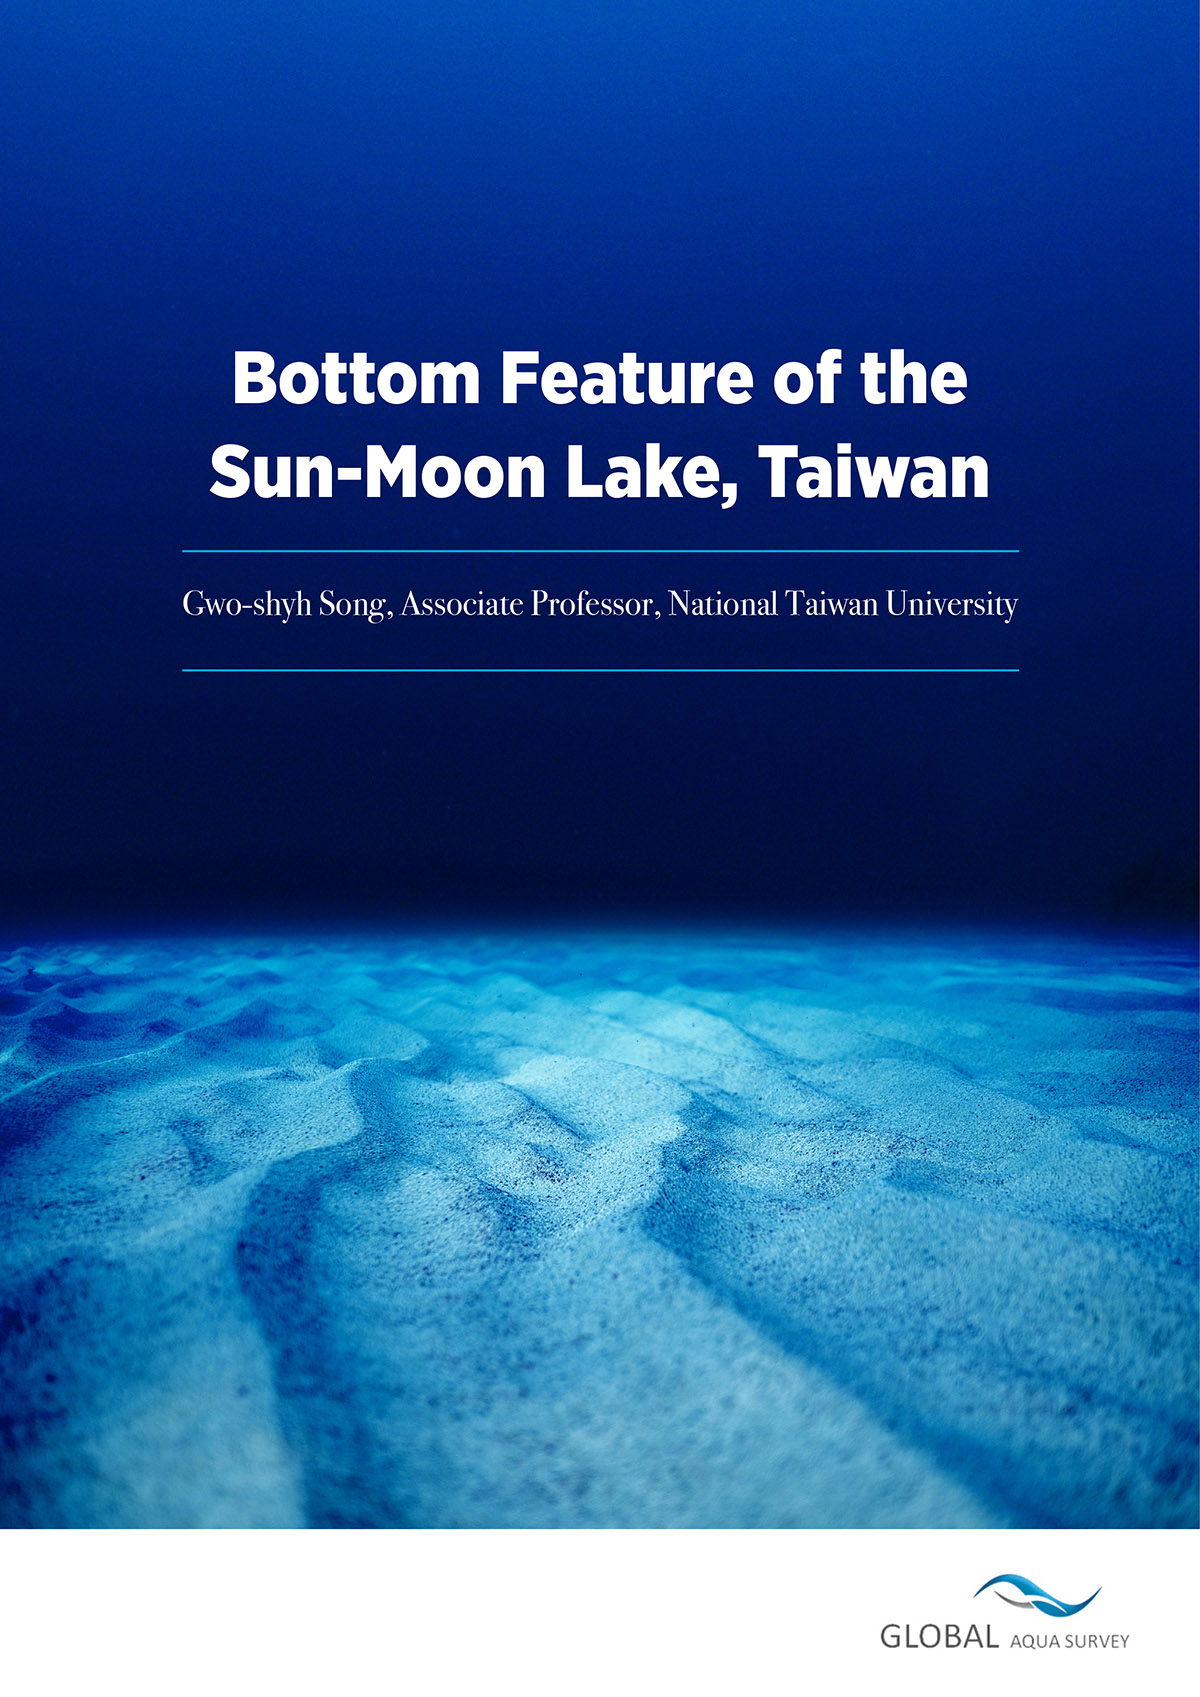 Sun-moon lake